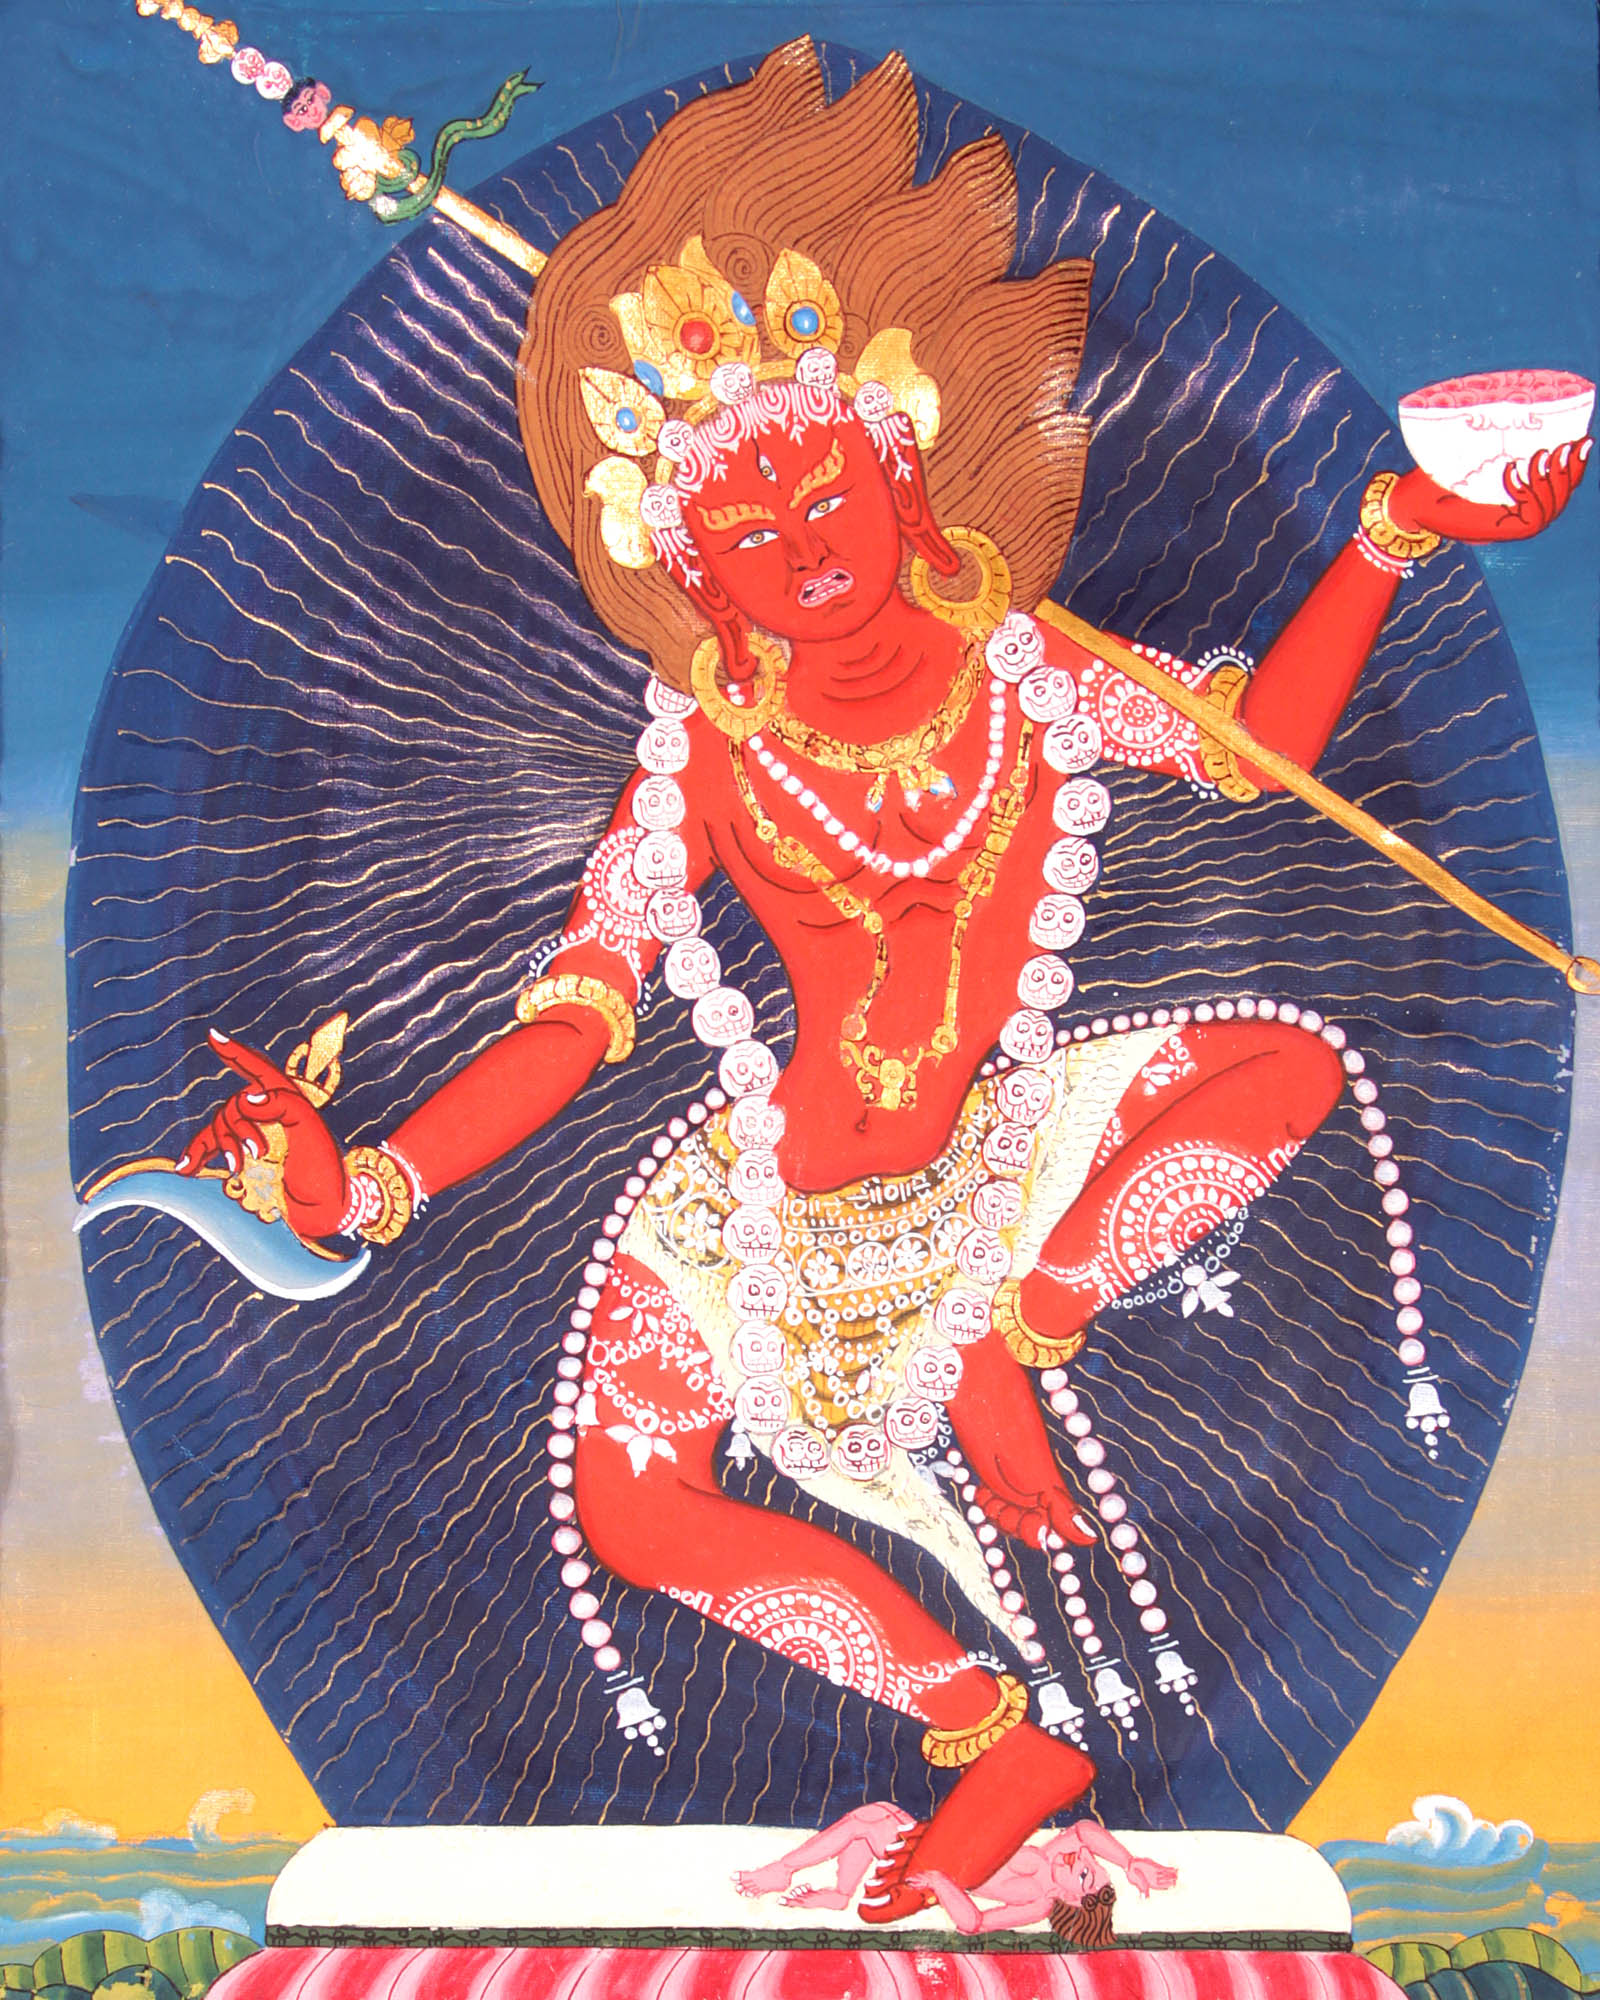 The 
Vajrayogini Image